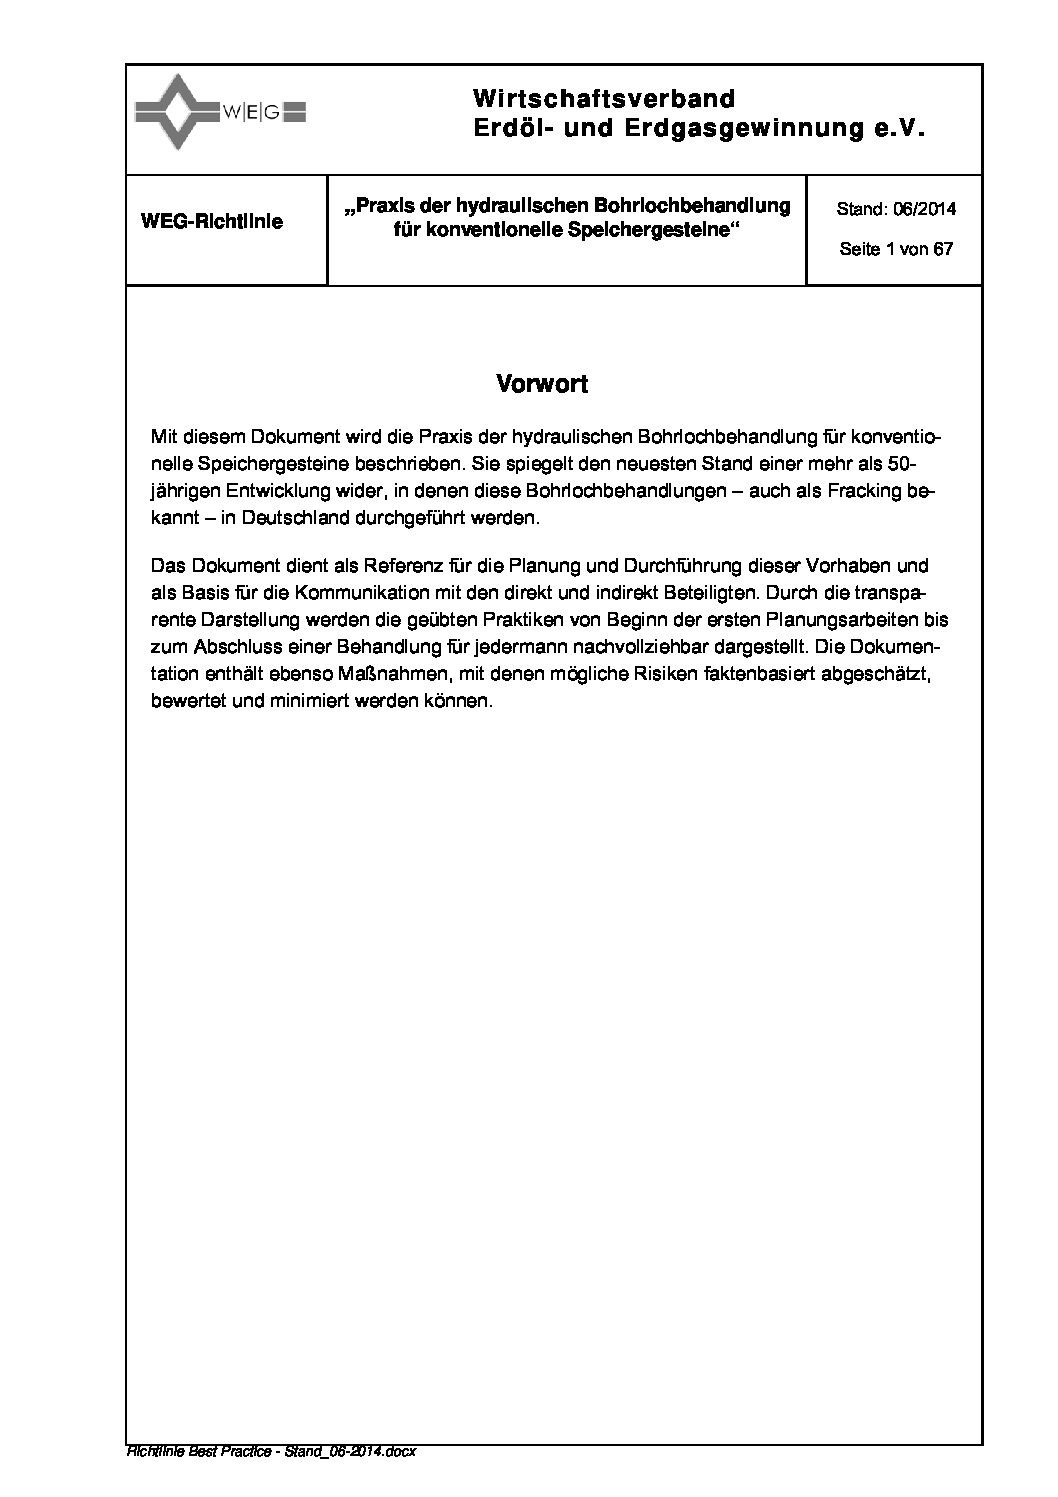 WEG Richtlinie Praxis der hydraulischen Bohrlochbehandlung für konventionelle Speichergesteine